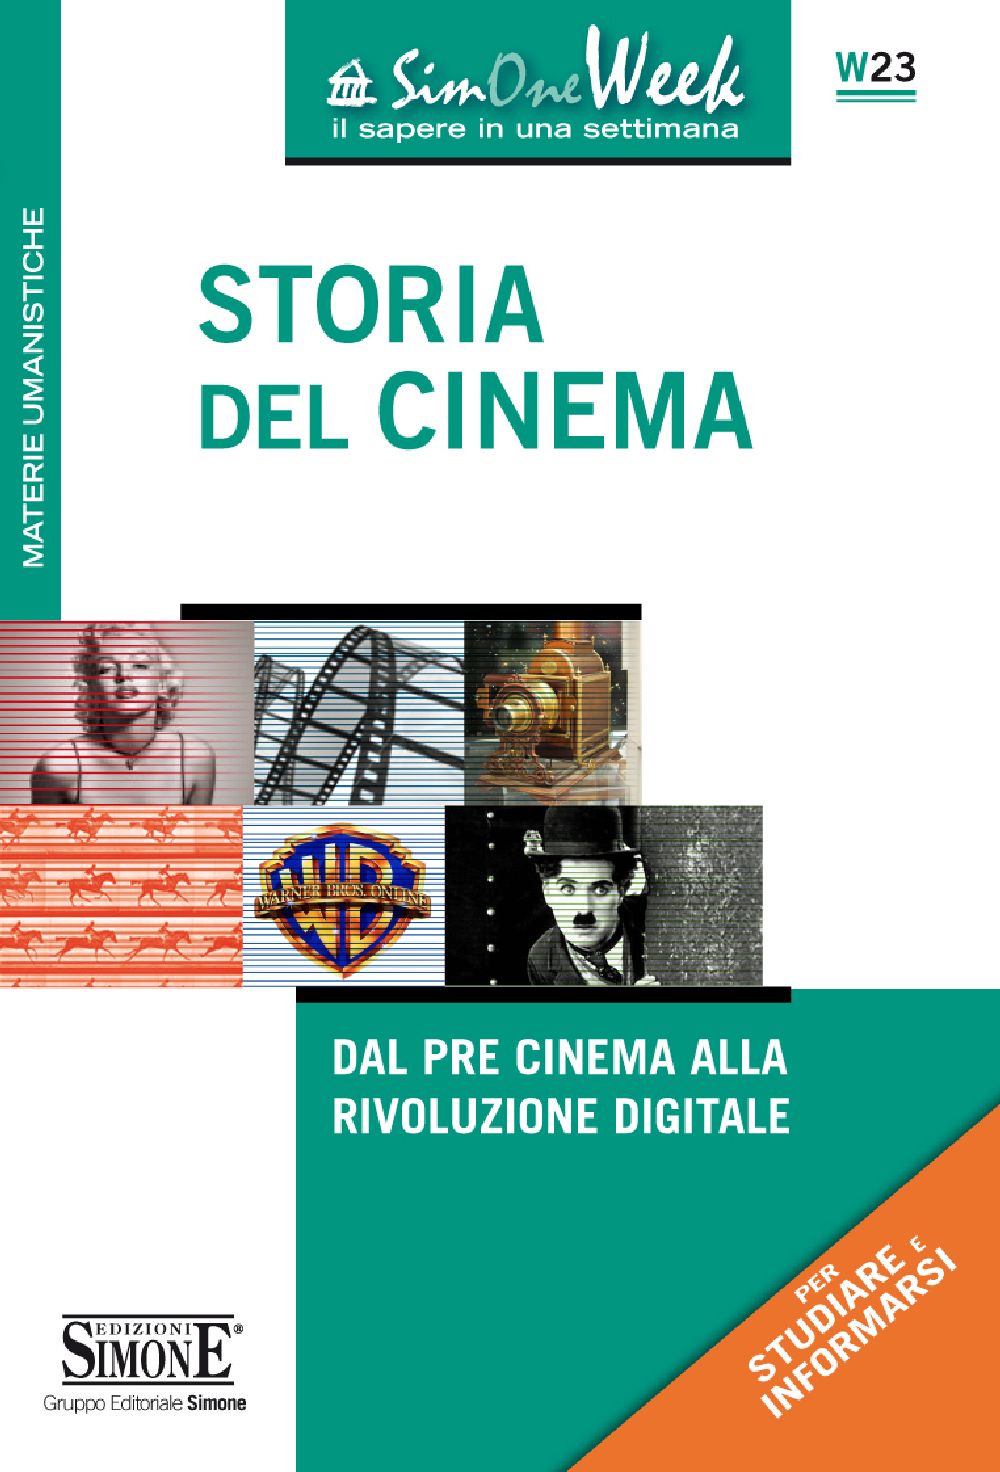 Storia del Cinema - W23 - Edizioni Simone